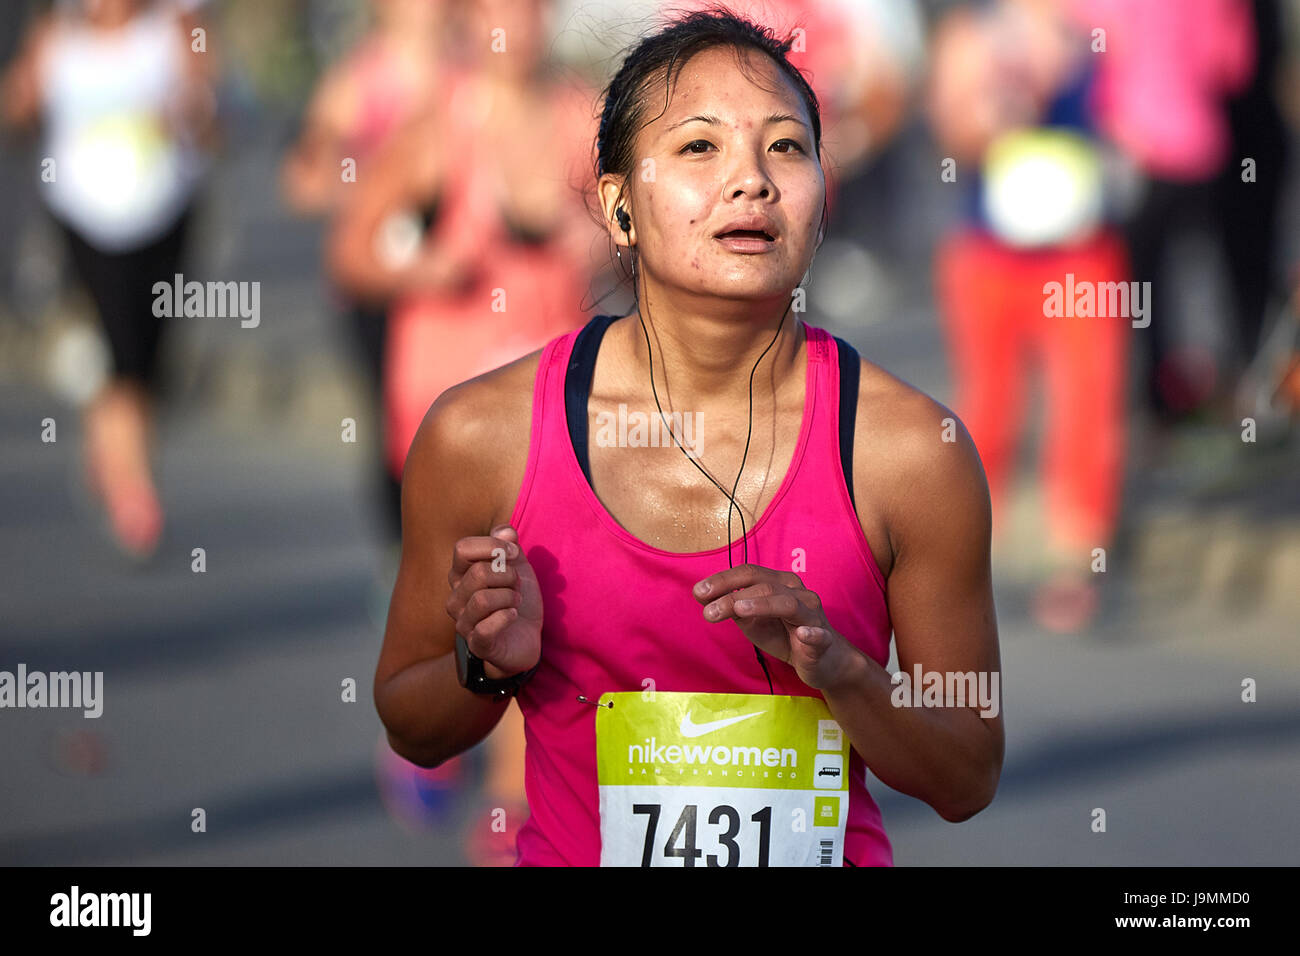 Determina la atleta femenina asiática acercándose a la línea de meta en la media maratón de la mujer Nike, San Francisco. Foto de stock